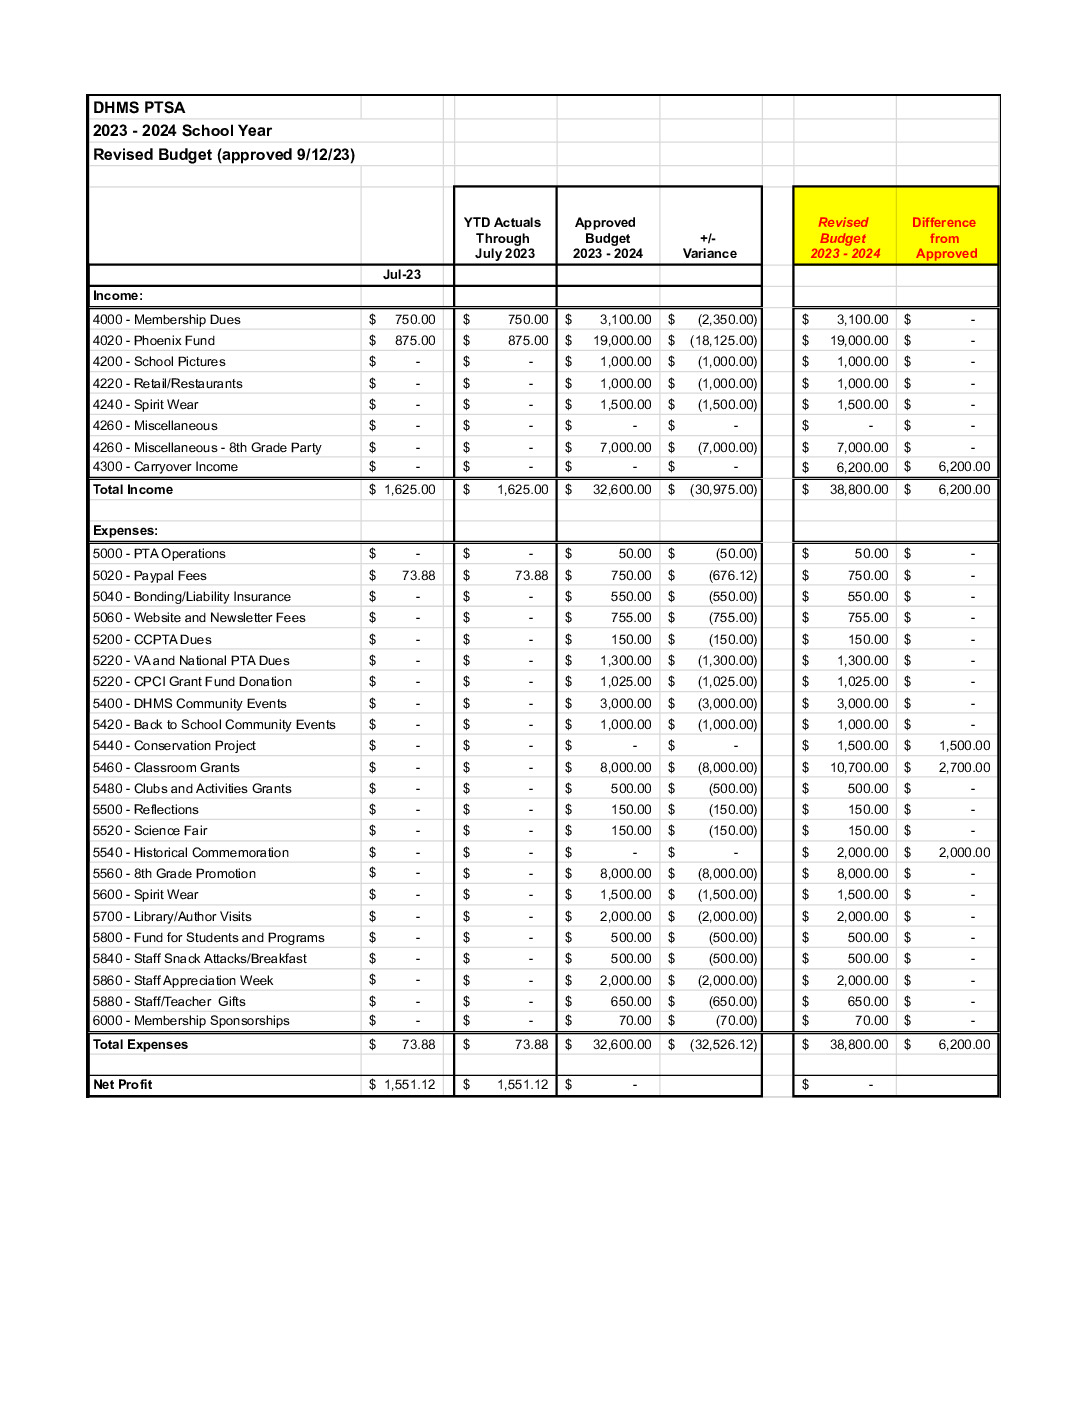 thumbnail of DHMS PTSA Budget 2023-24 Revised 091223